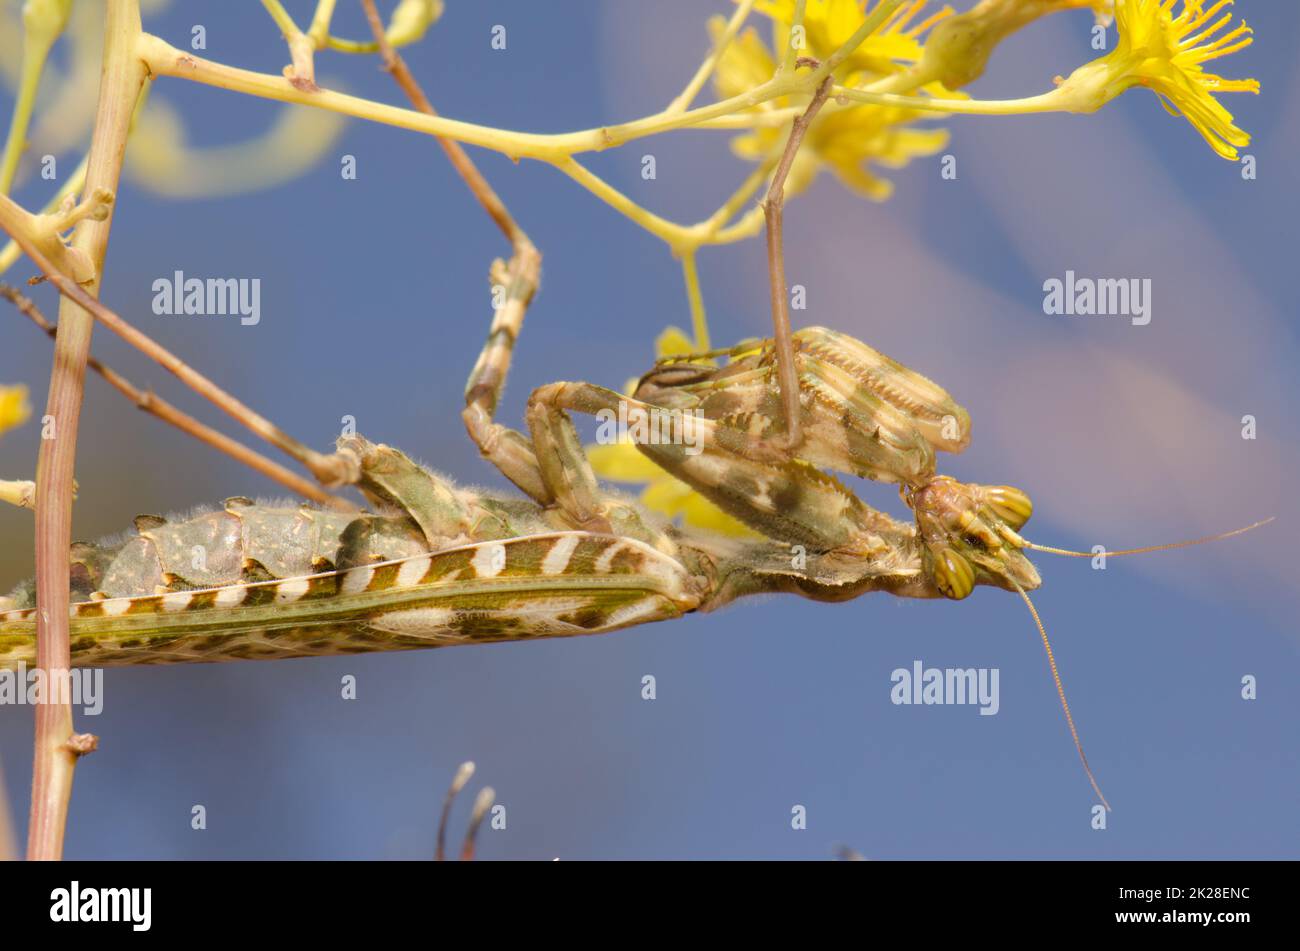 Egyptian flower mantis Blepharopsis mendica. Stock Photo